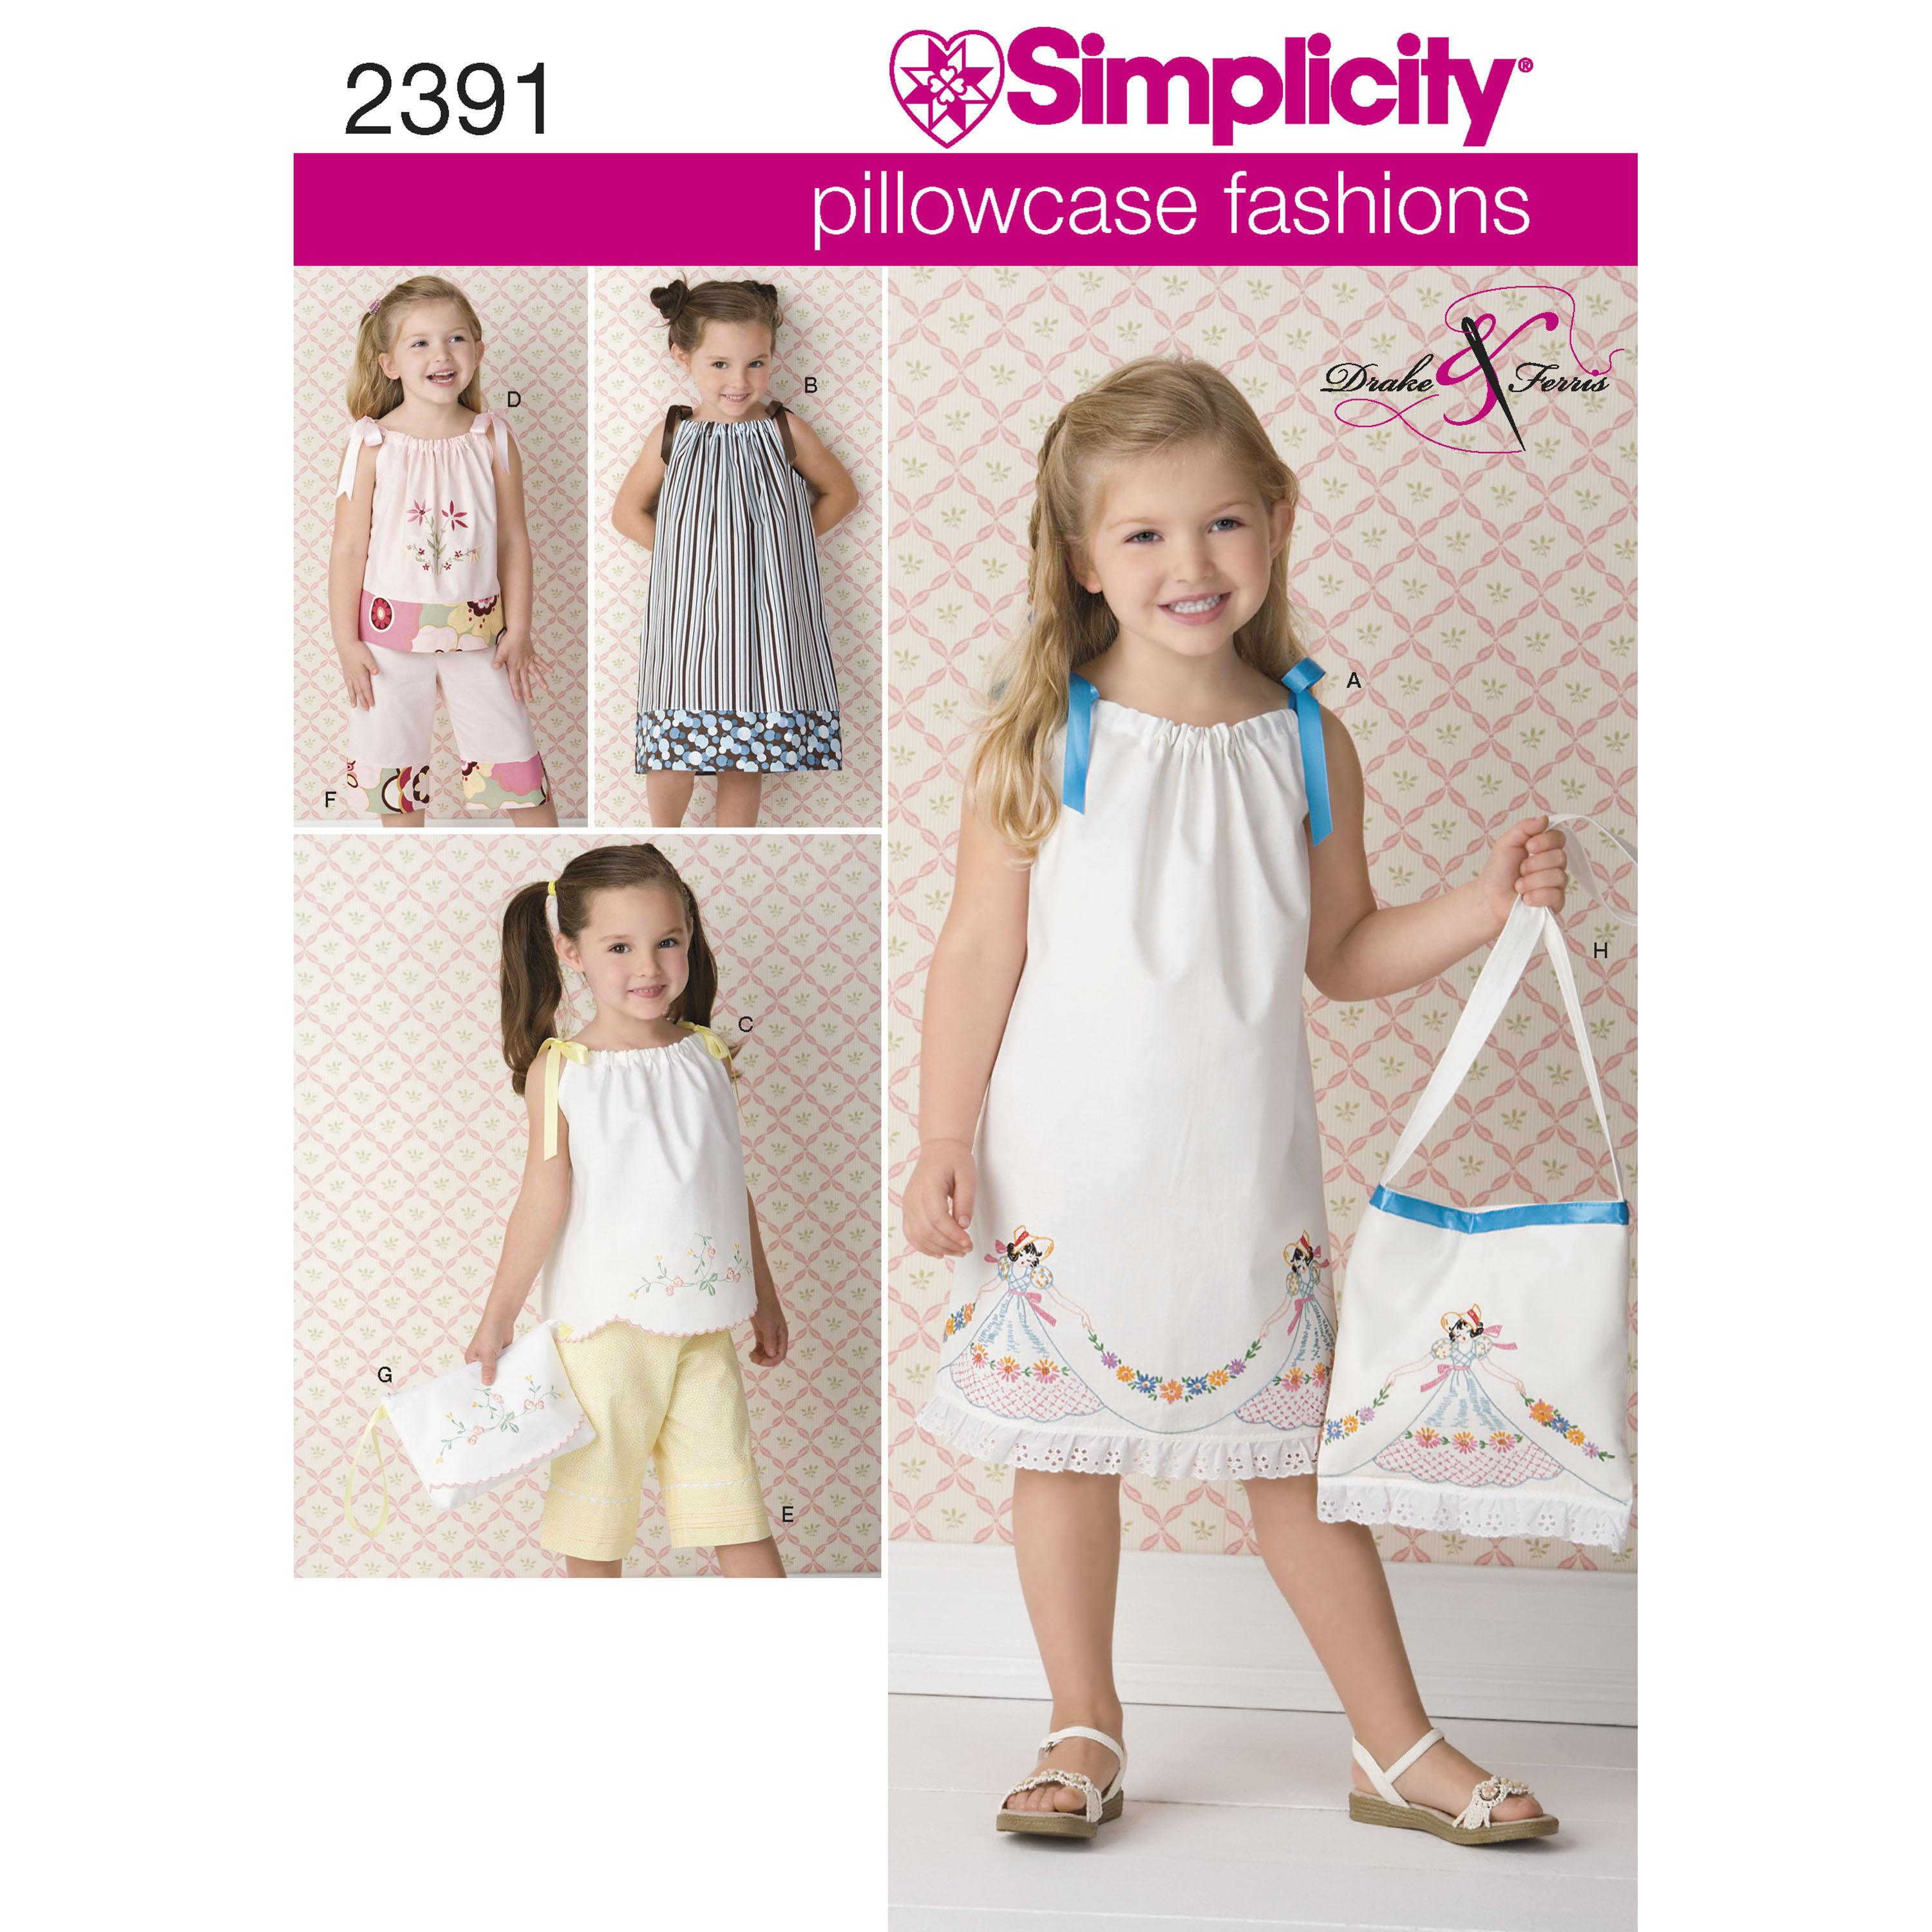 Simplicity S2391 Child's vintage pillow case fashion